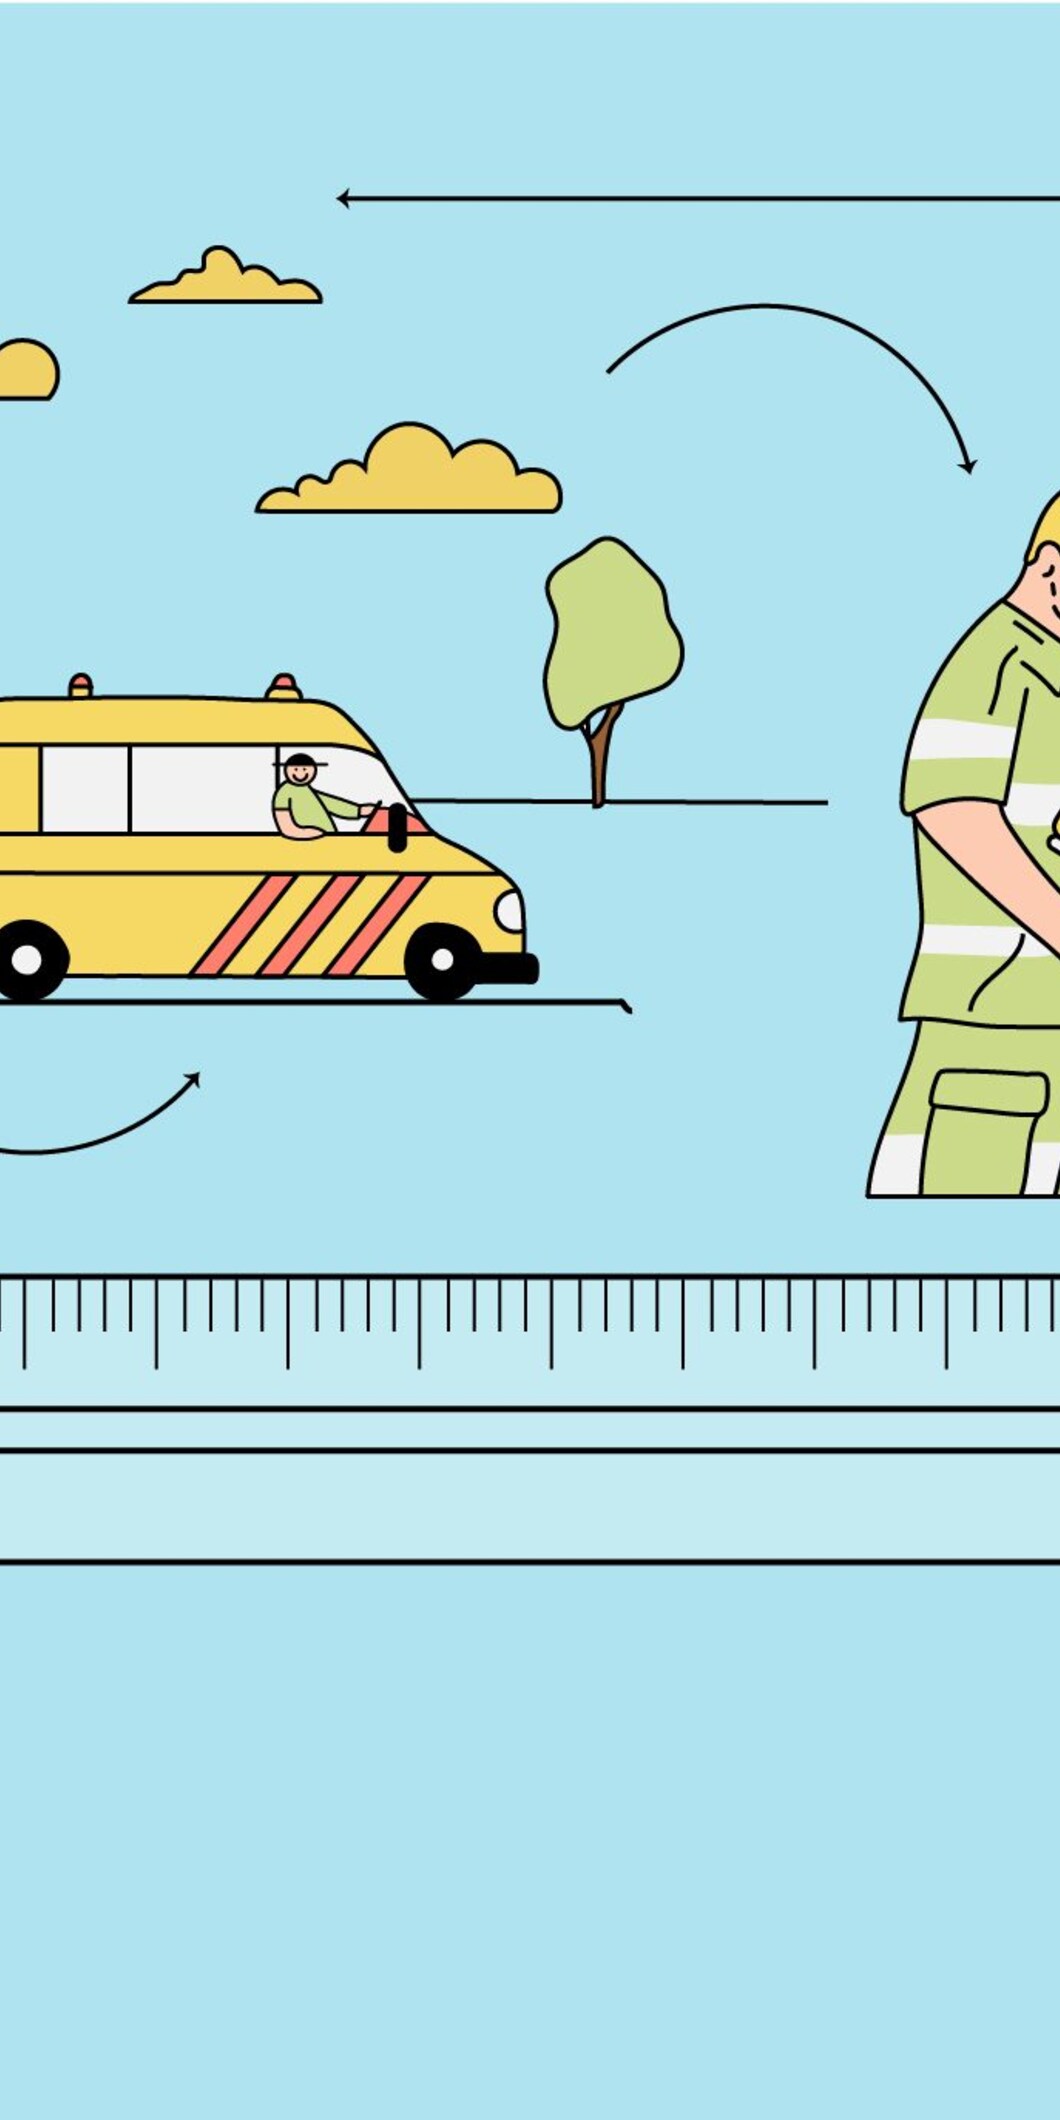 Illustratie van een politieagent die een verward persoon helpt en een ambulance die de persoon meeneemt